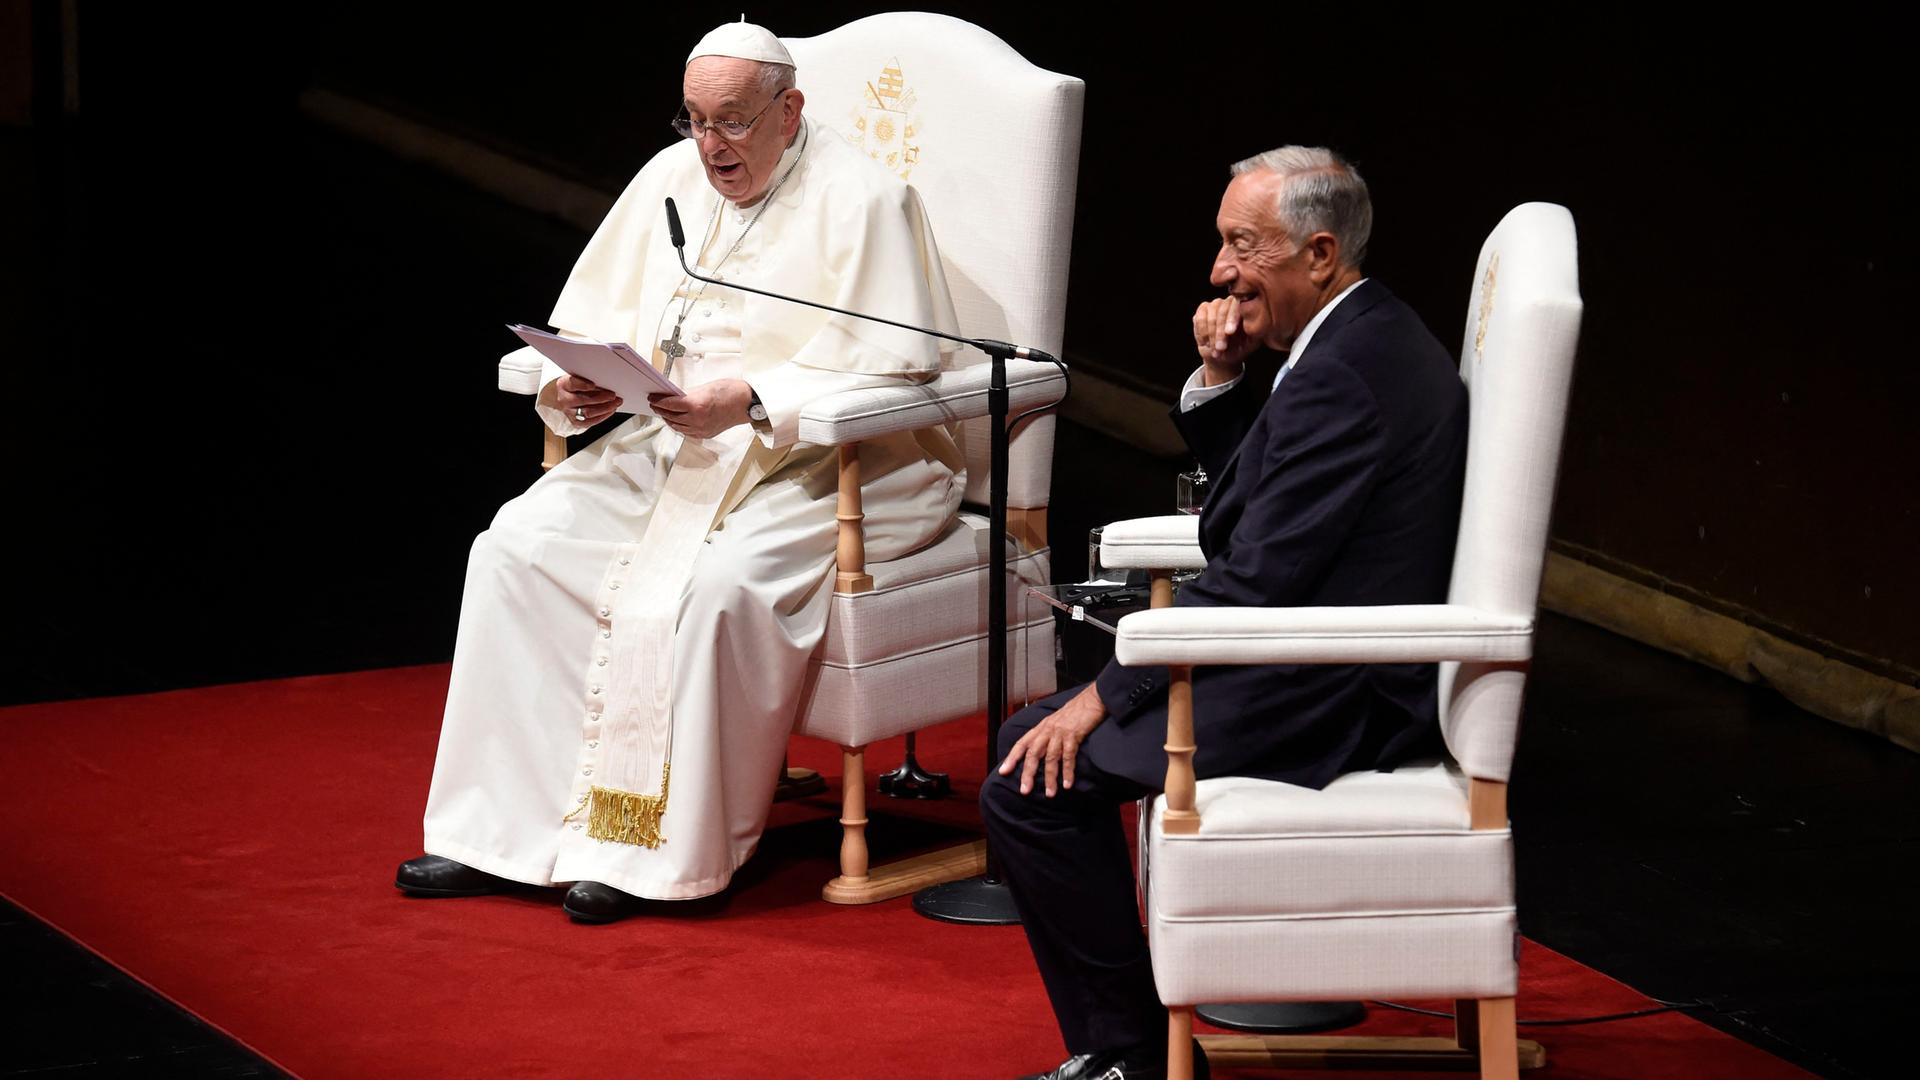 Papst Franziskus hält eine Rede. Neben ihm sitzt der portugiesische PRäsident de Sousa mit auf der Bühne.